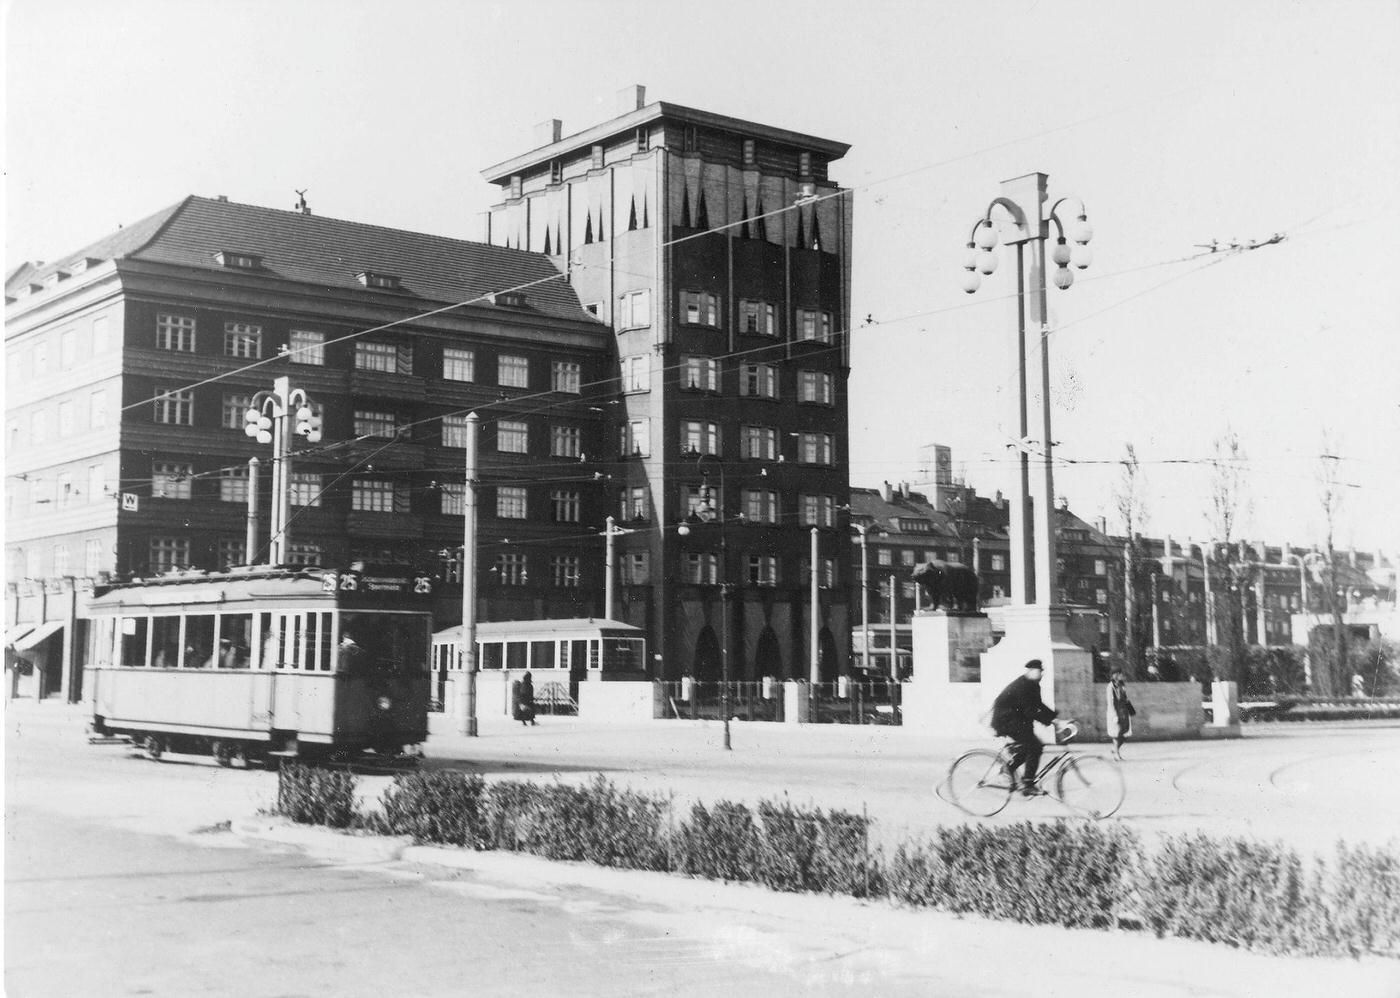 Strassenbahn Berlin, Berlin, 1930